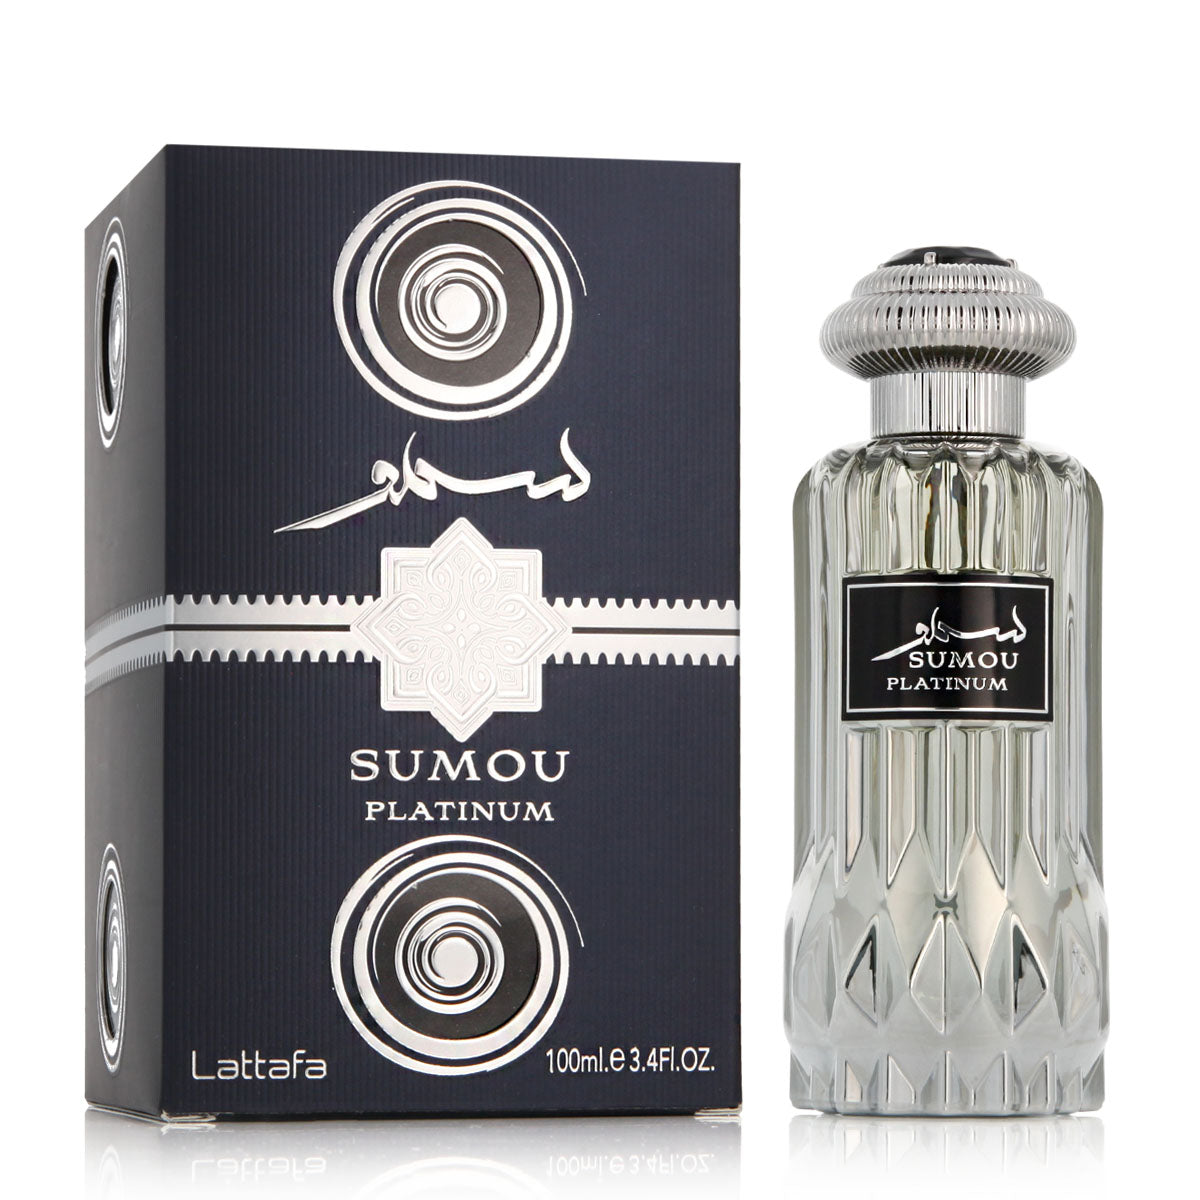 Sumou Platinum Eau de Parfum 100ml (3.4Oz) By Lattafa - Intense oud